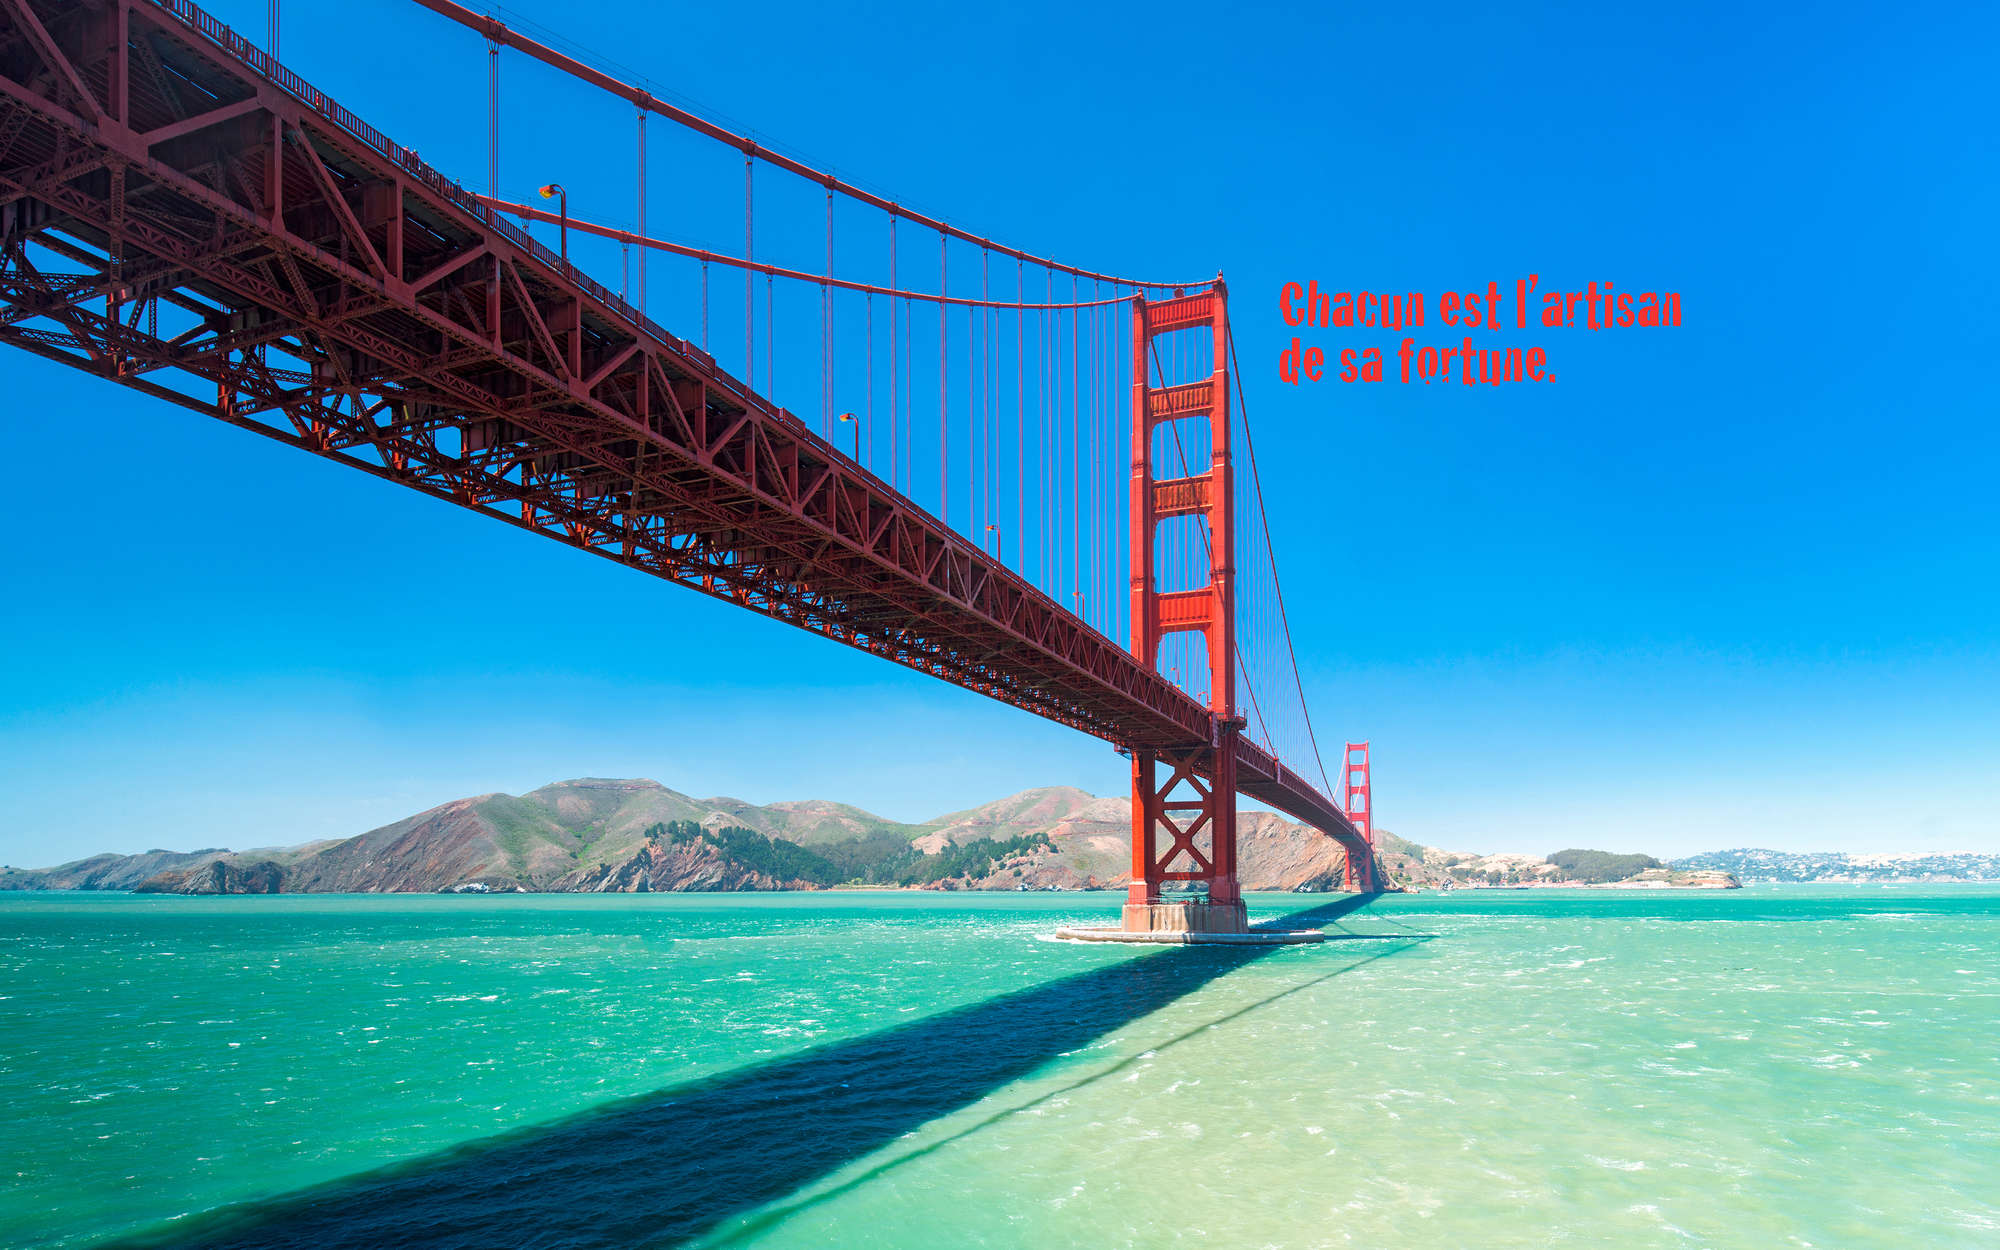             Fototapete Golden Gate Bridge mit Schriftzug auf französisch – Mattes Glattvlies
        